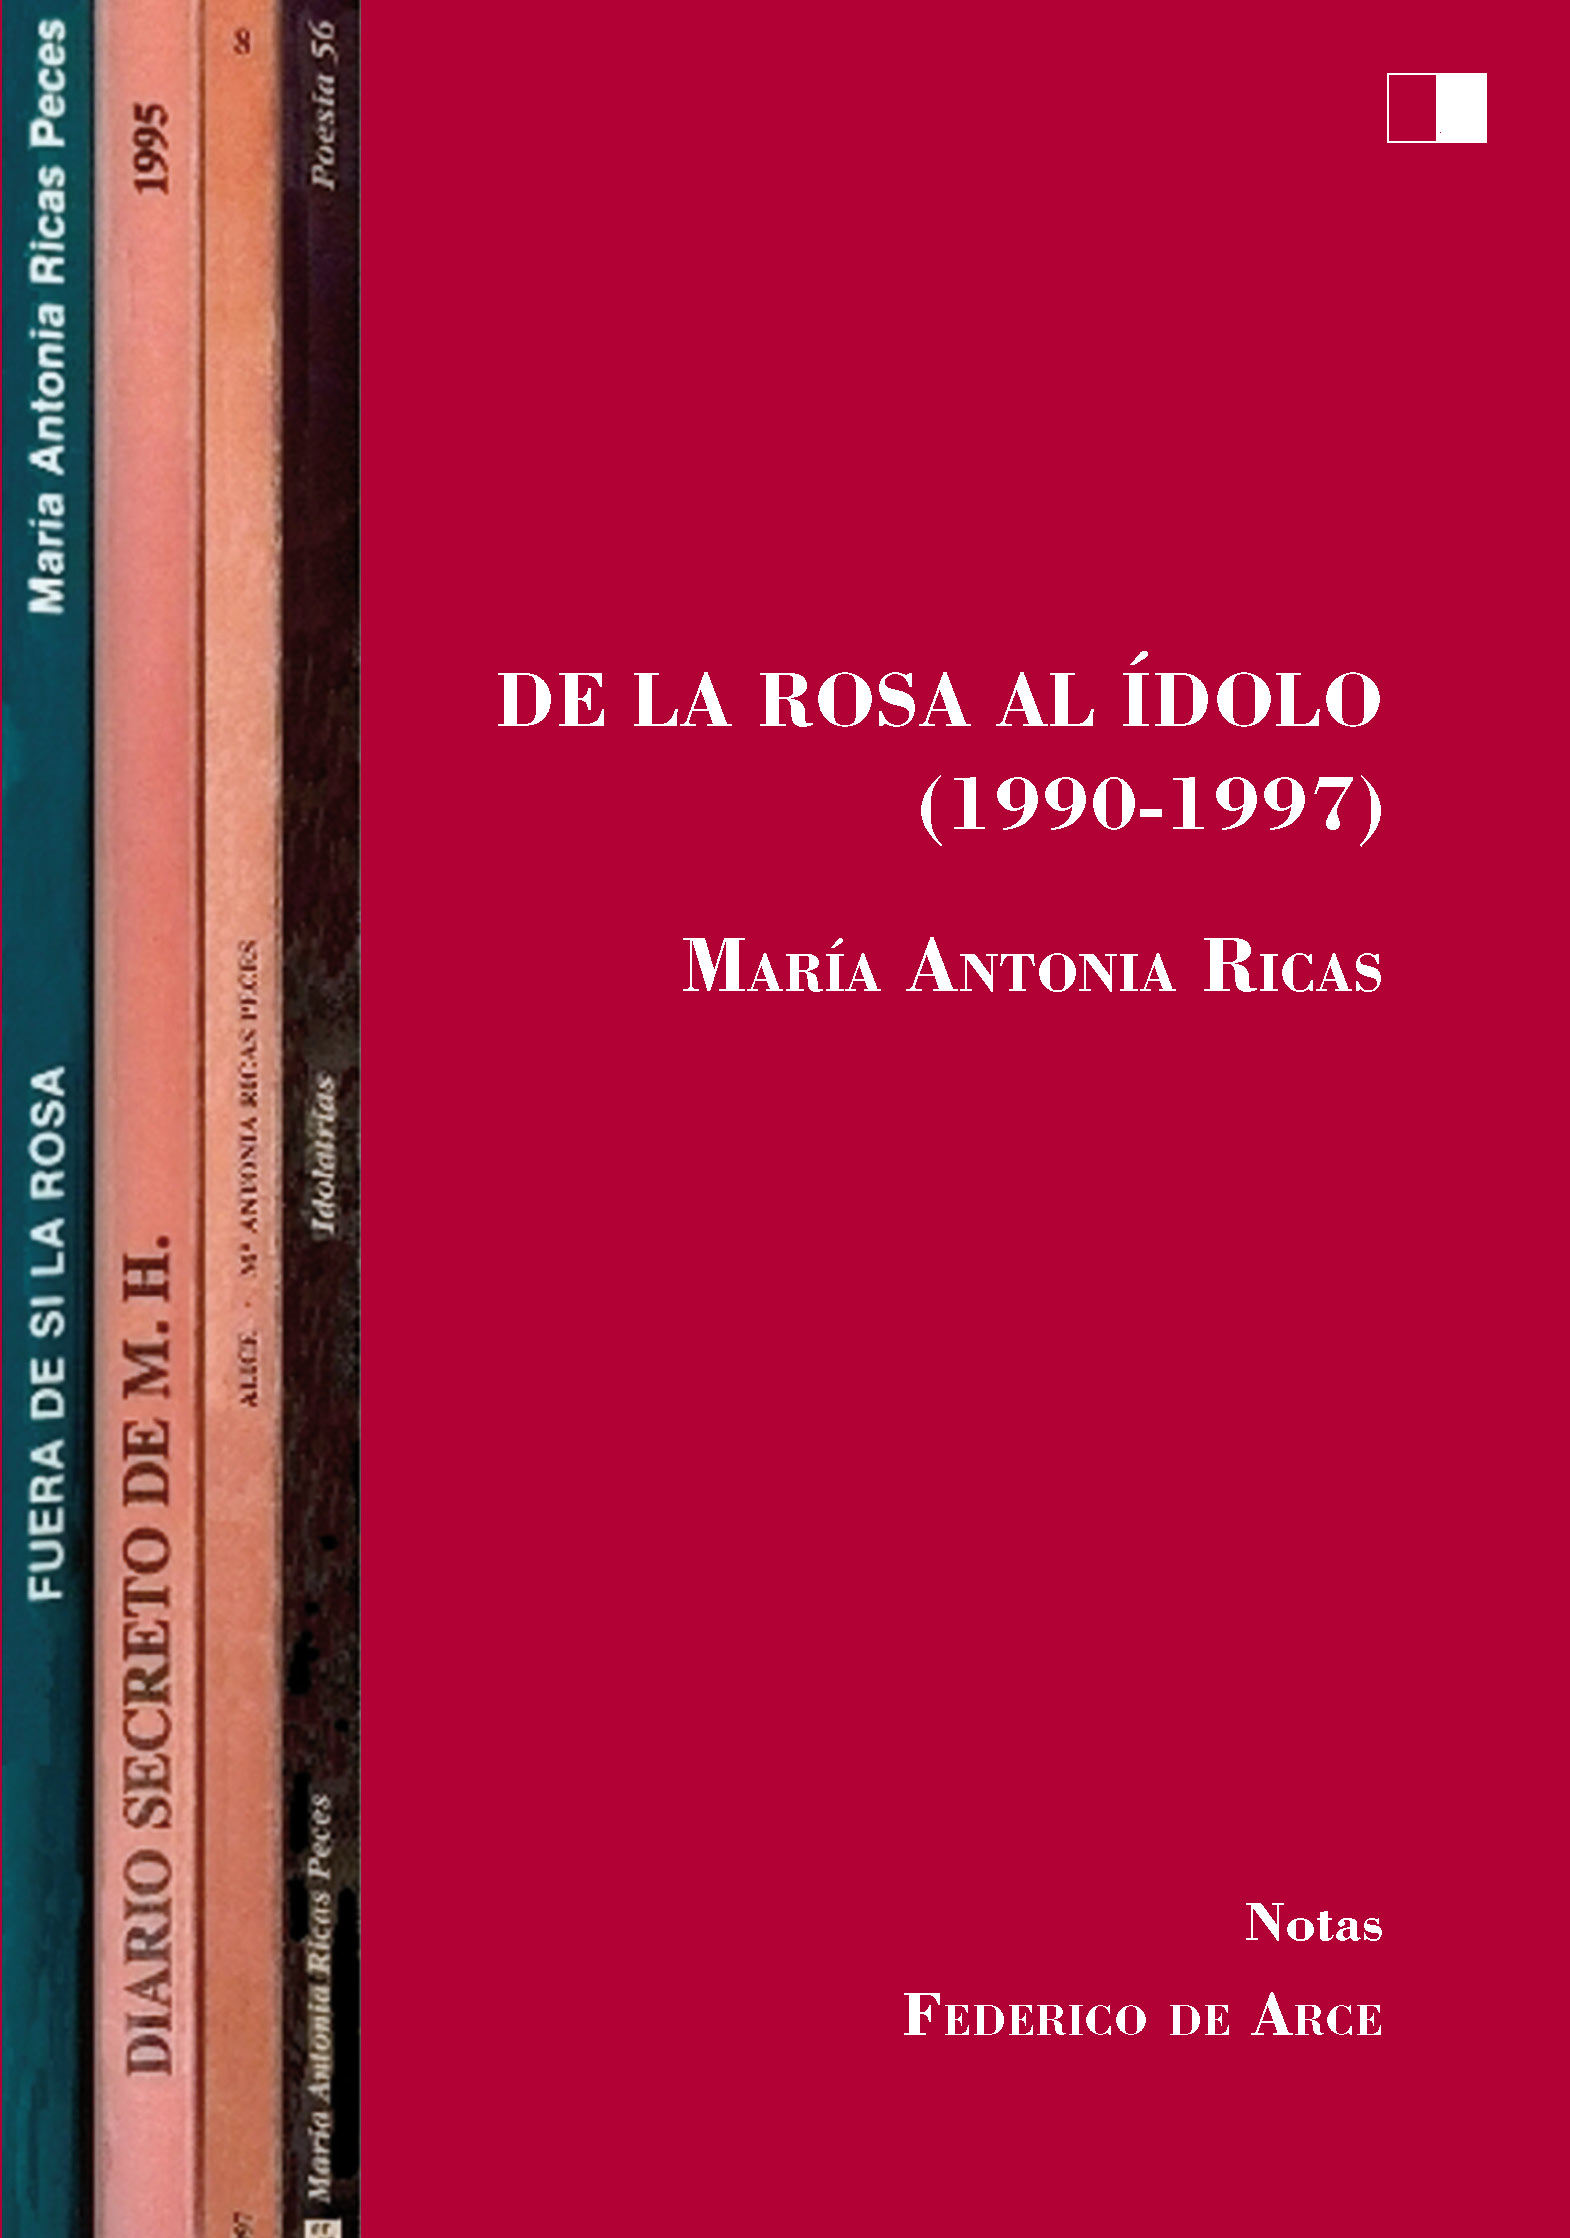 DE LA ROSA AL ÍDOLO (1990-1997)